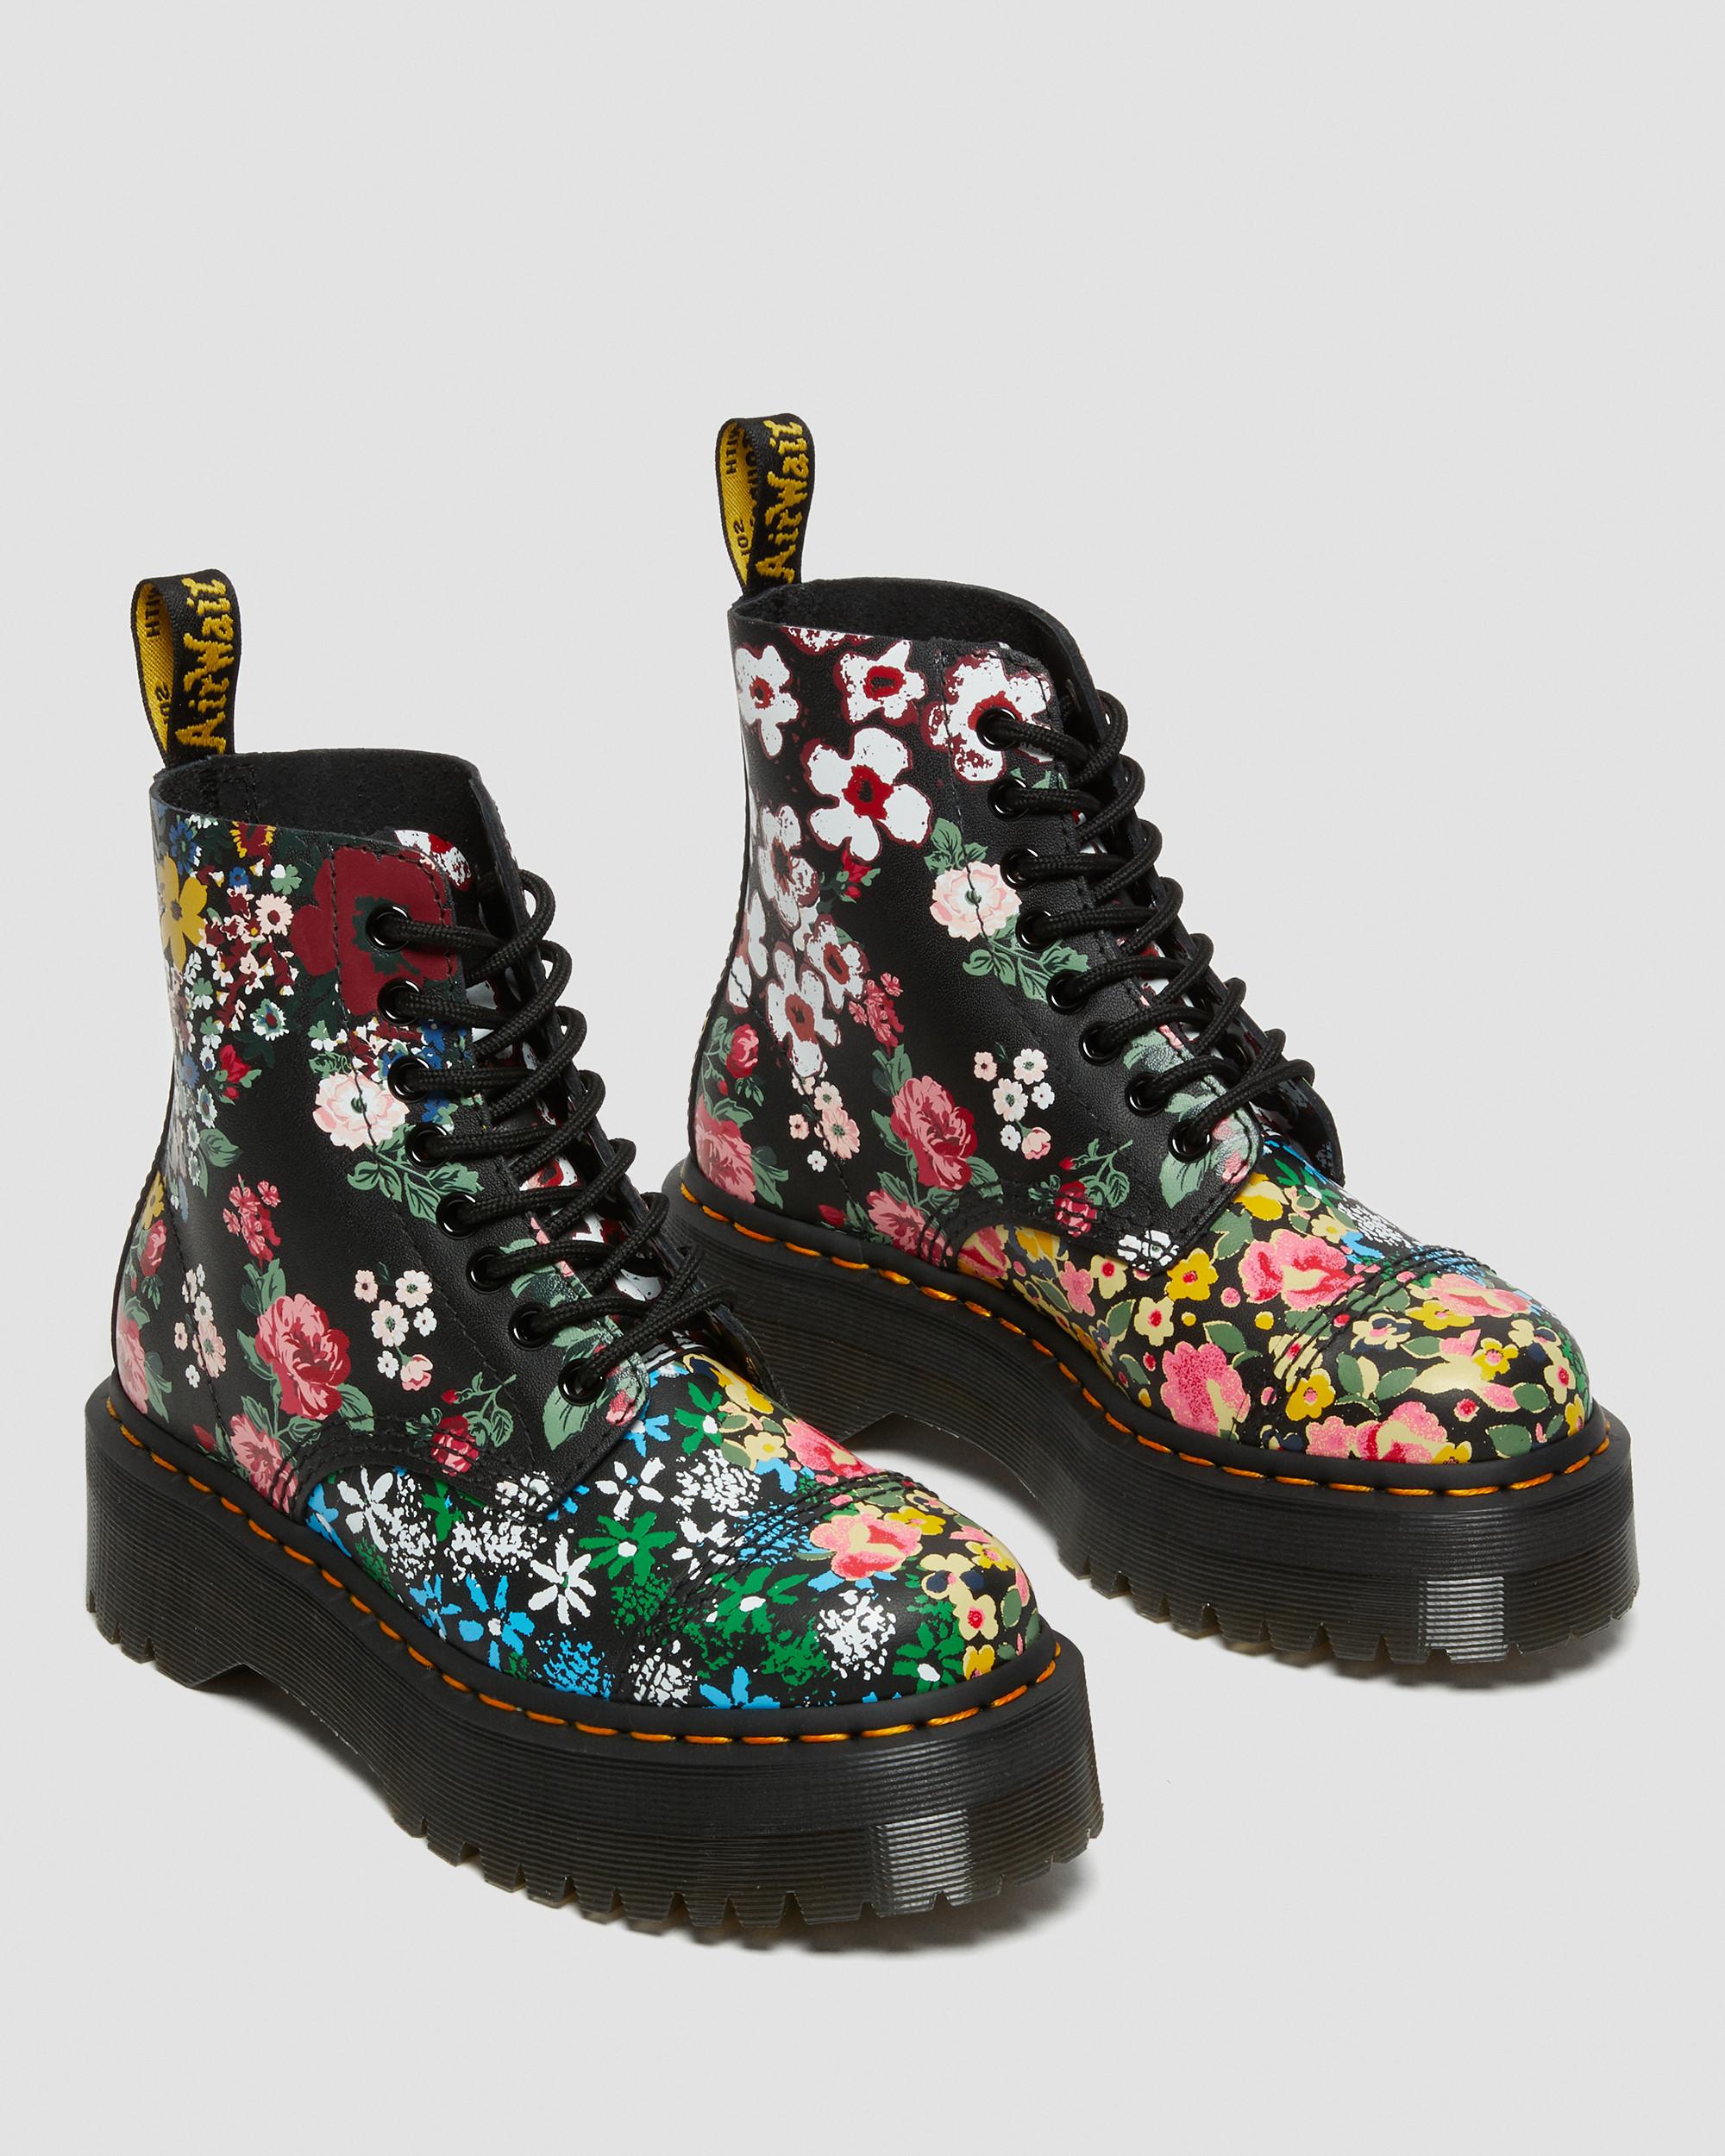 Up Black Dr. Boots Leather Platform in | Mash Floral Sinclair Martens